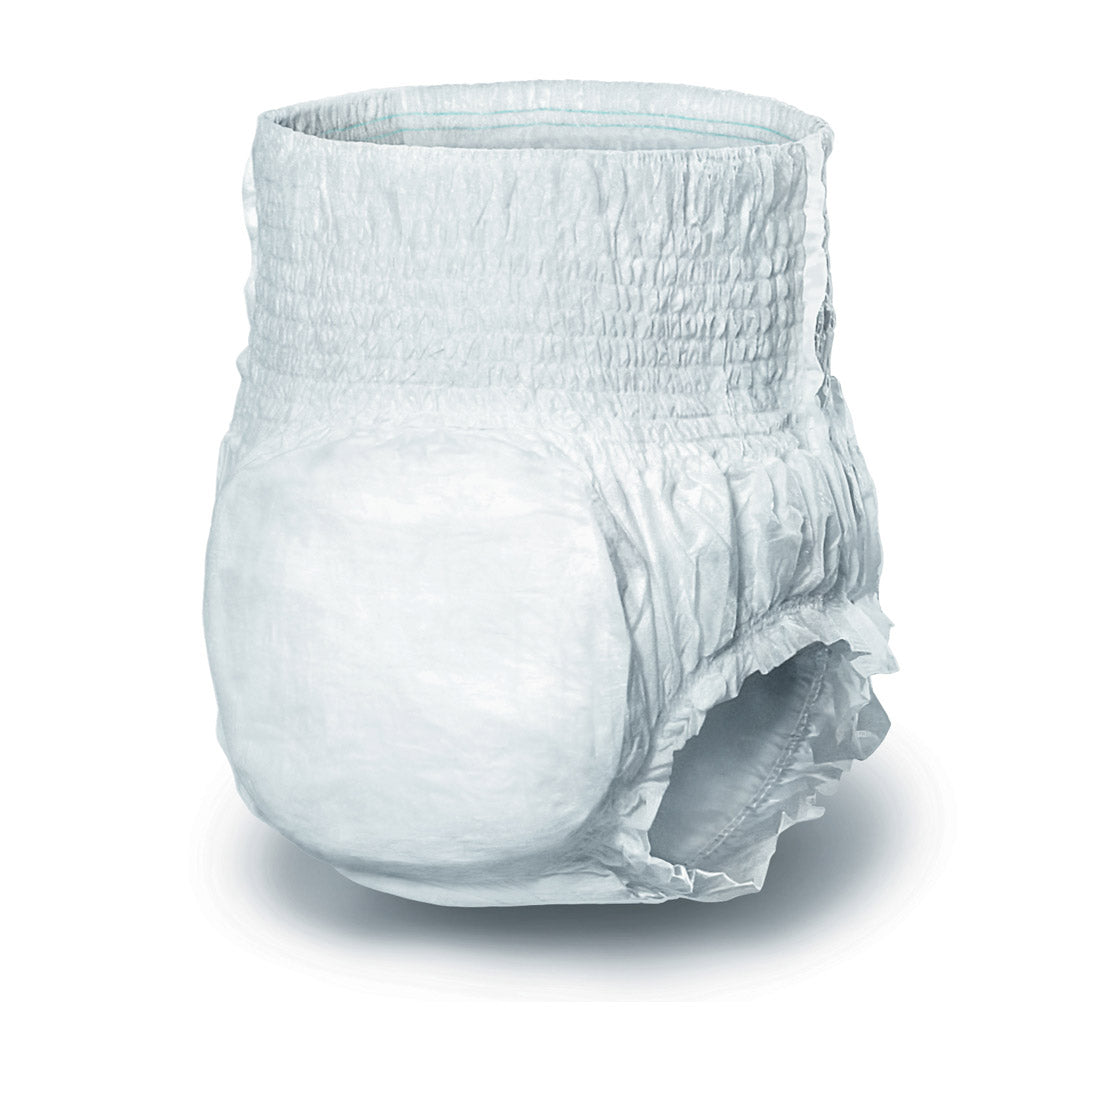 Digniwear Protective Underwear – Uniko Healthcare Product